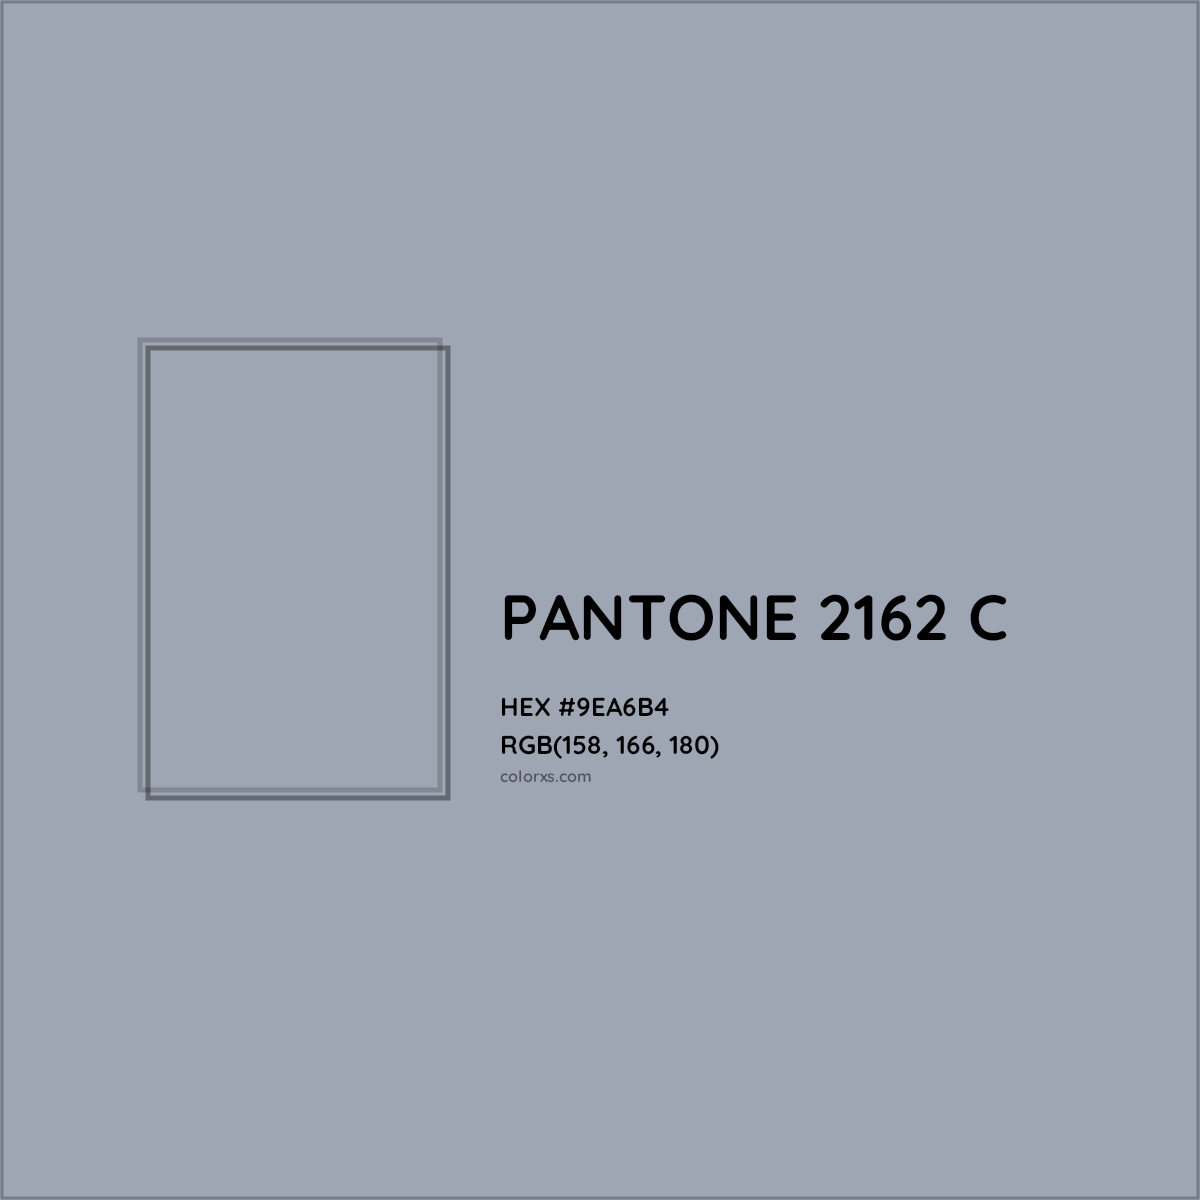 HEX #9EA6B4 PANTONE 2162 C CMS Pantone PMS - Color Code